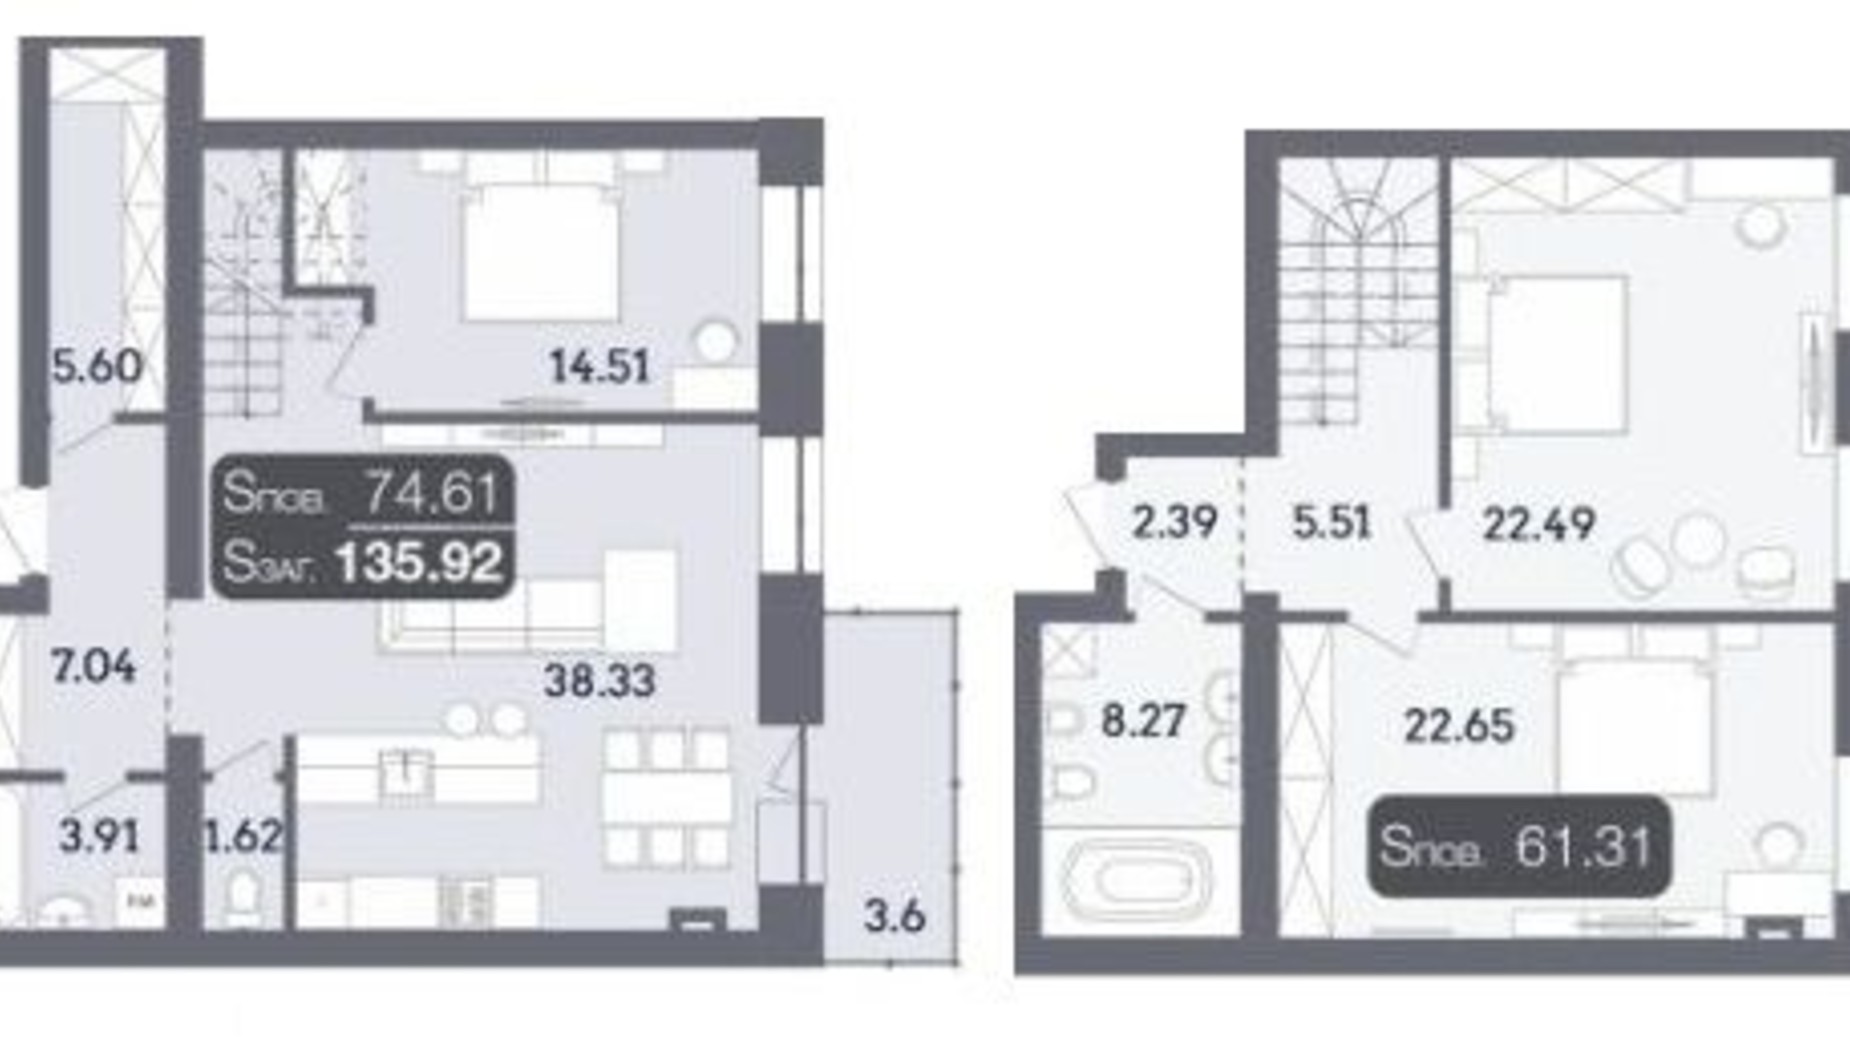 Планировка много­уровневой квартиры в ЖК Стандарт 135.92 м², фото 335084